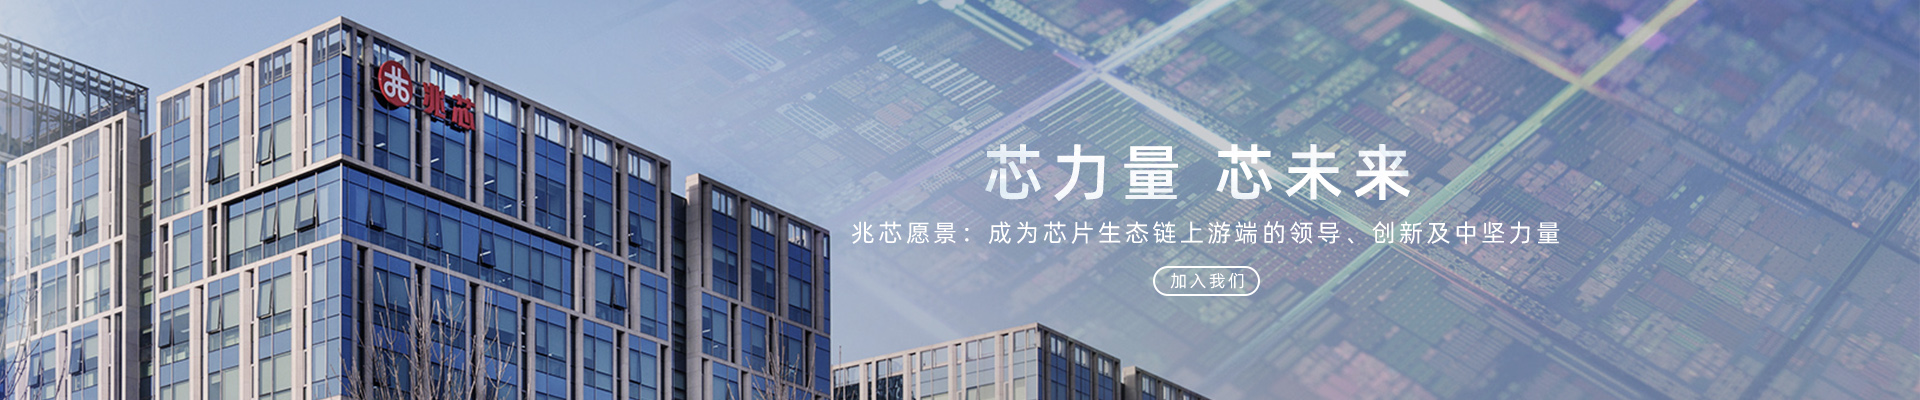 上海兆芯集成电路有限公司